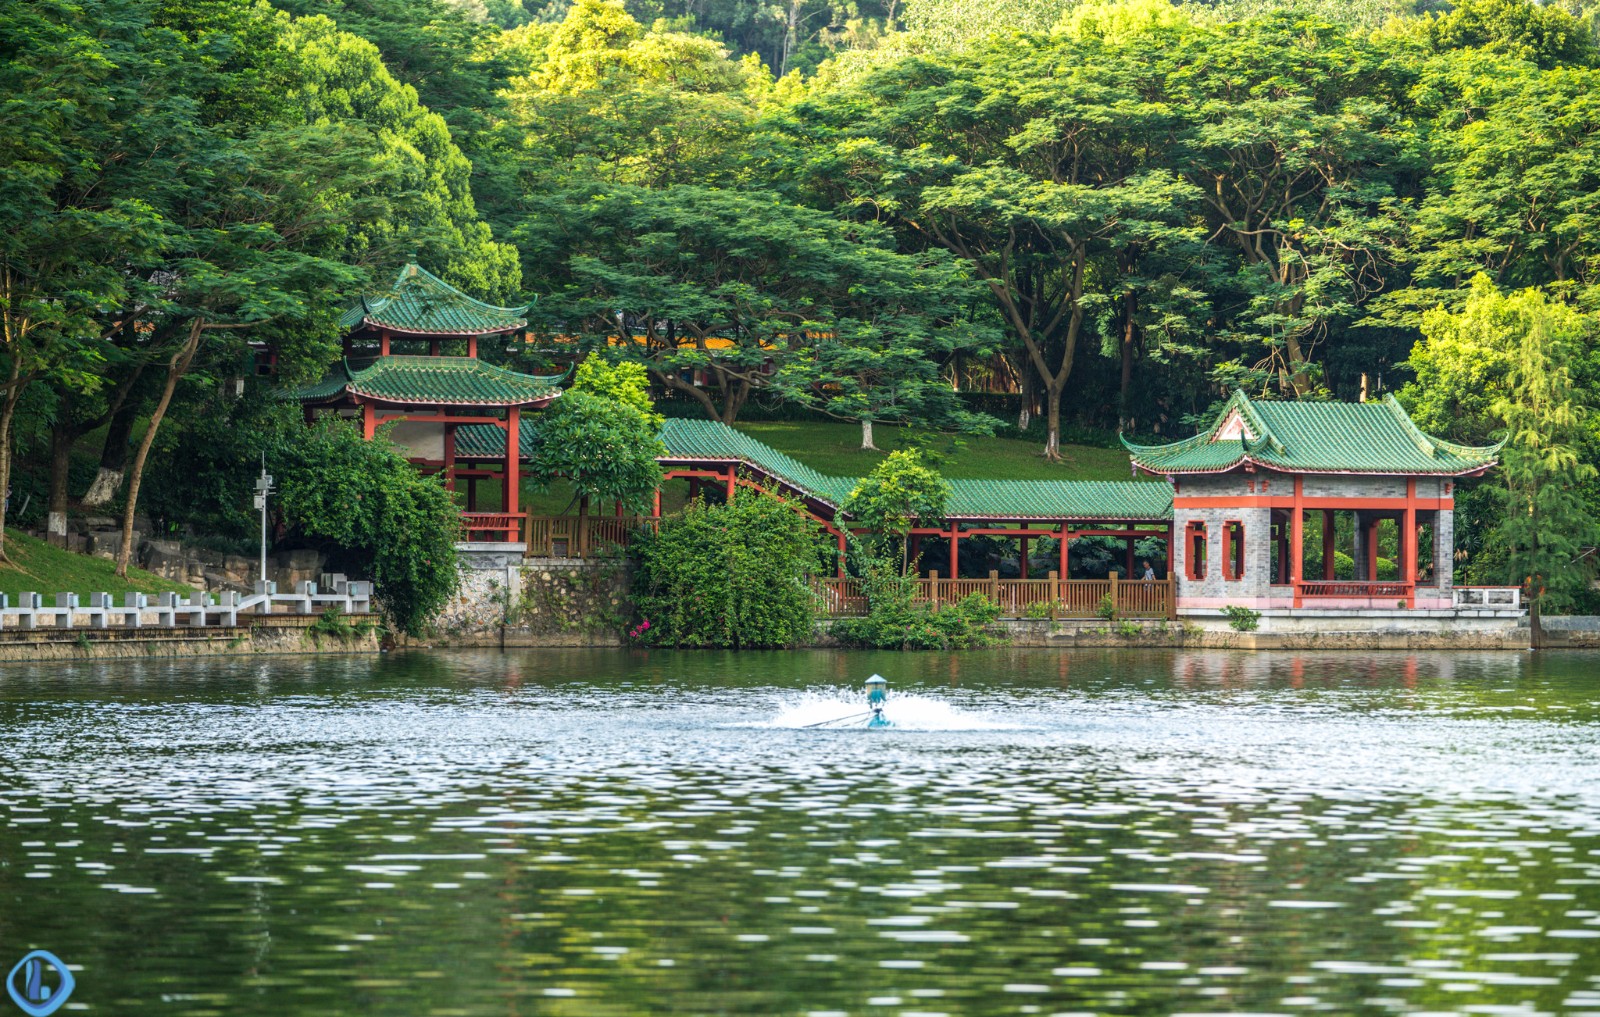 位于东莞市区黄旗山下的旗峰公园,是东莞人喜欢的一座免费公园